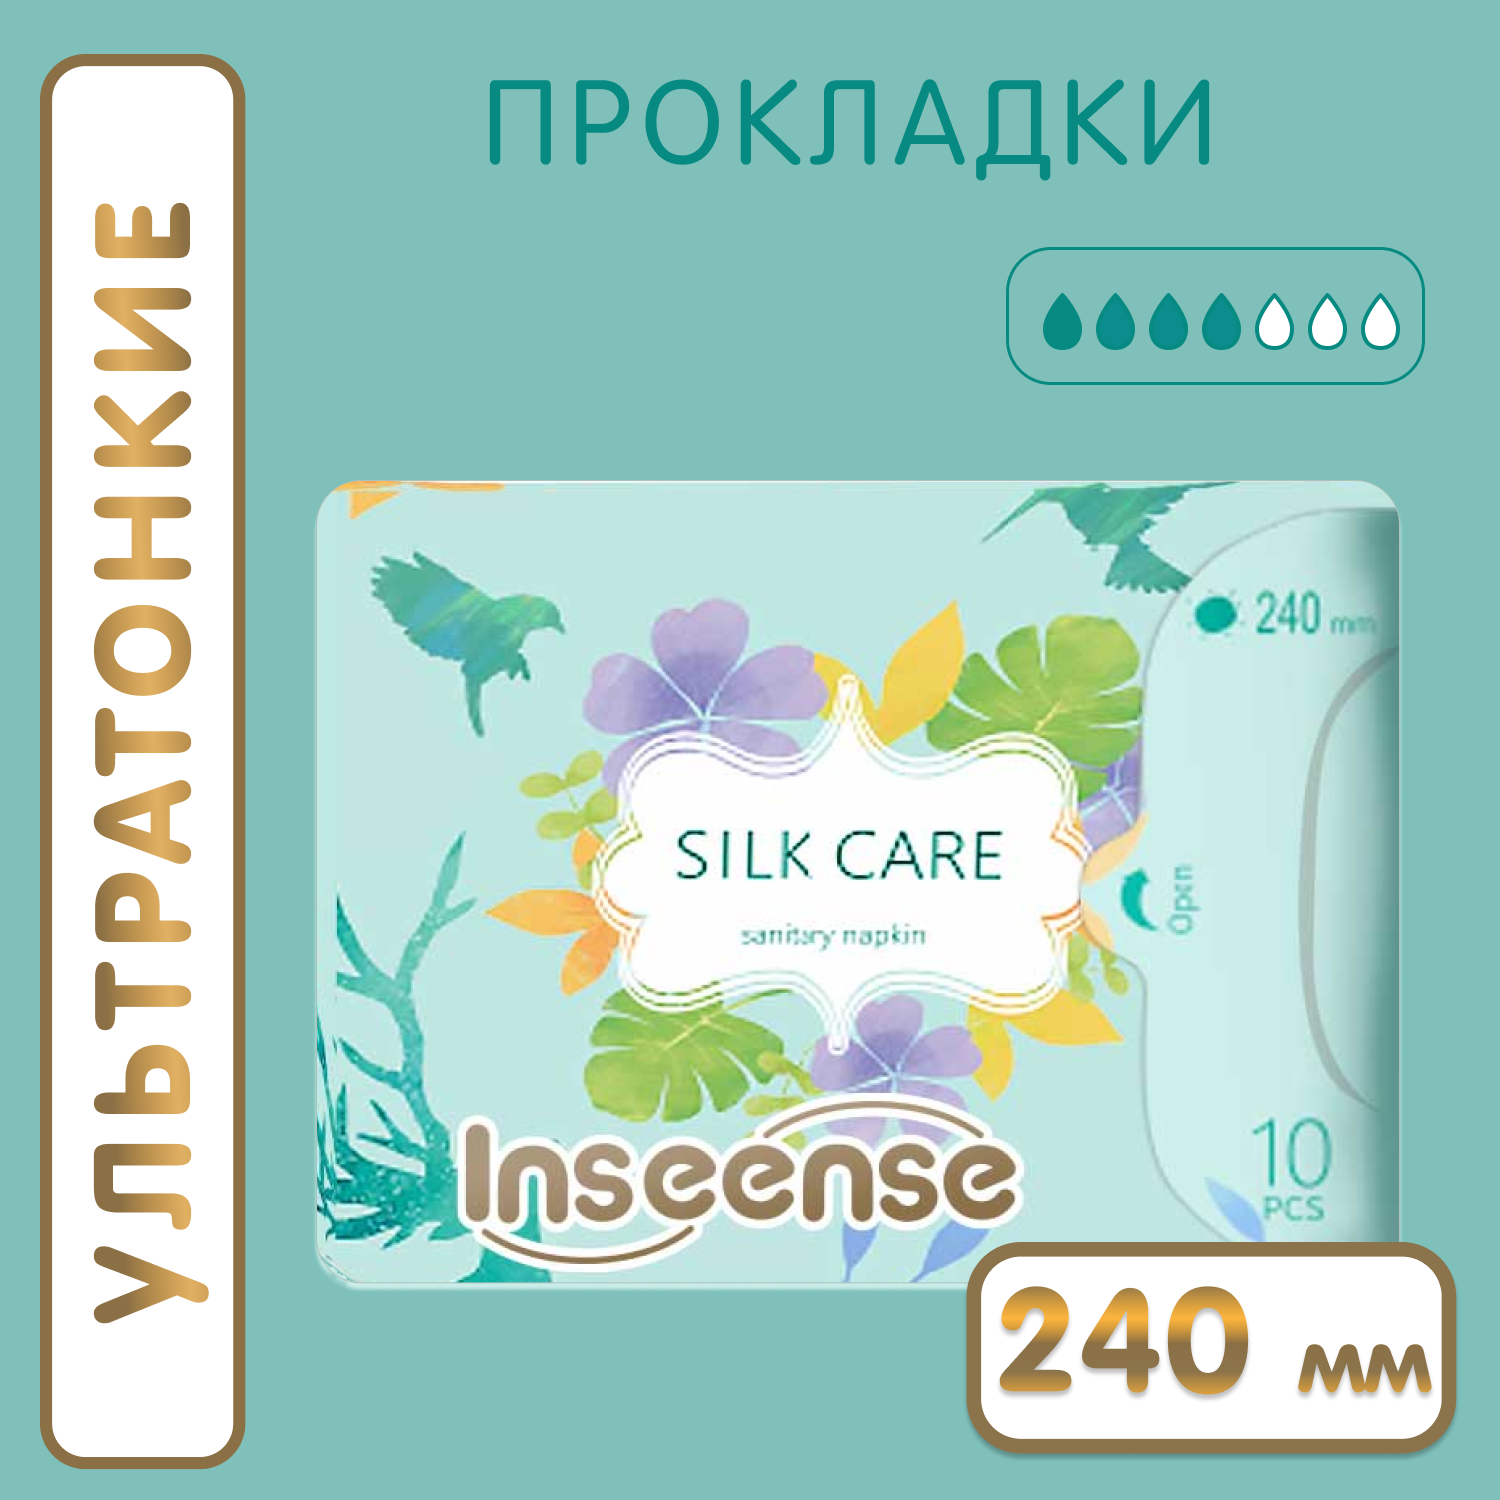 Прокладки гигиенические INSEENSE дневные Silk Care 4 капли 240 мм 10 штук - фото 1